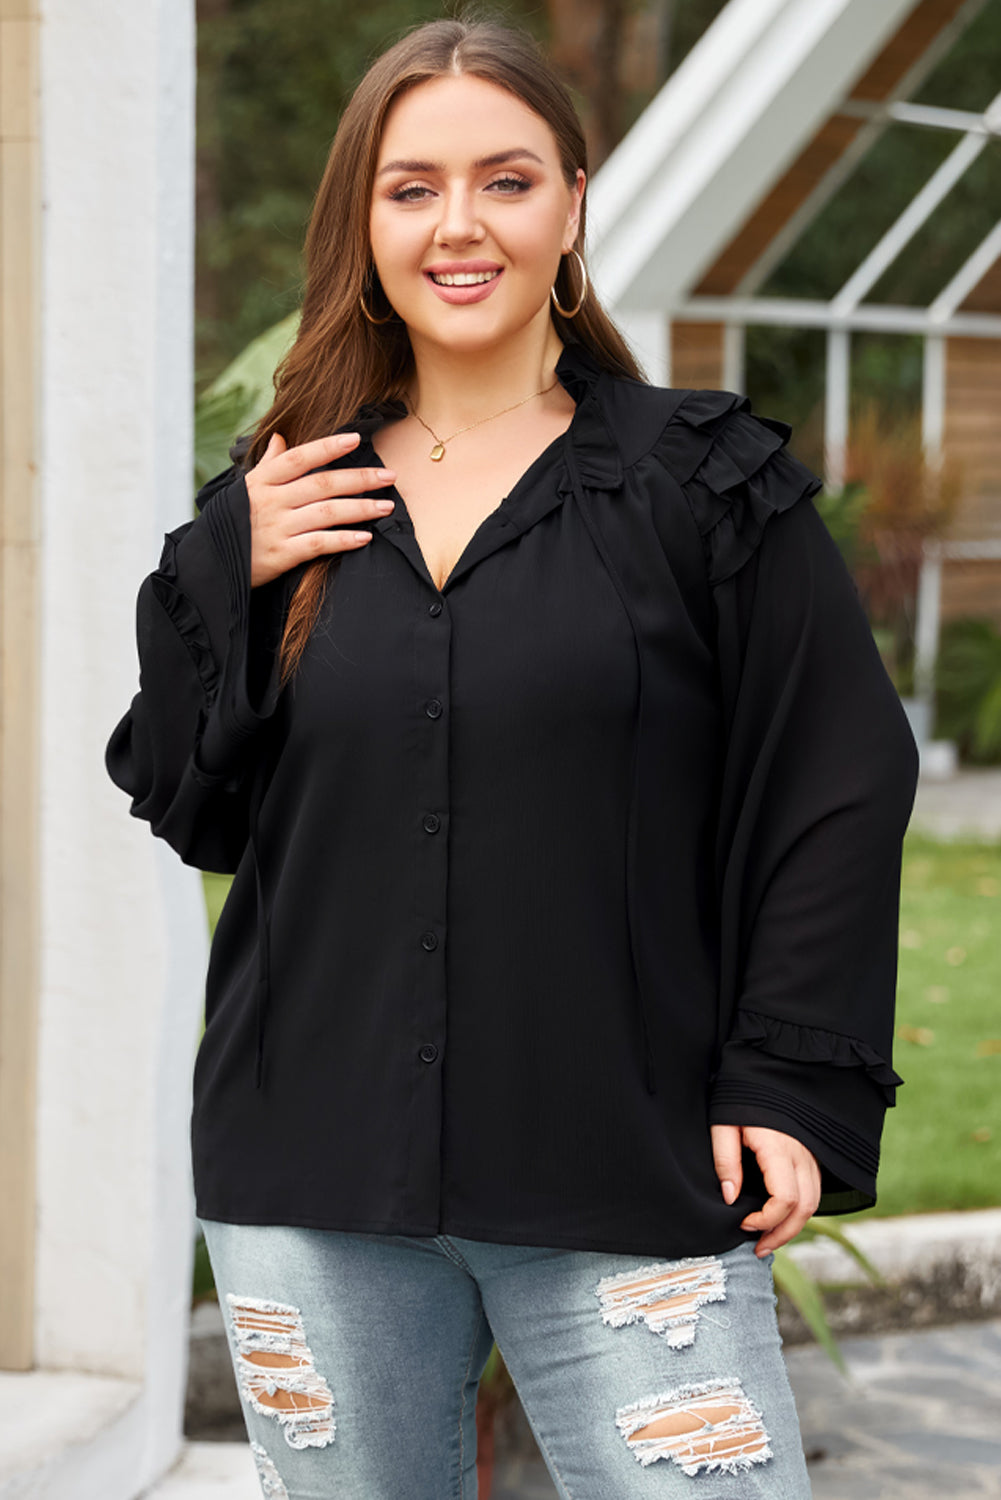 Crna bluza veće veličine s naborima i kopčanjem na ramenima